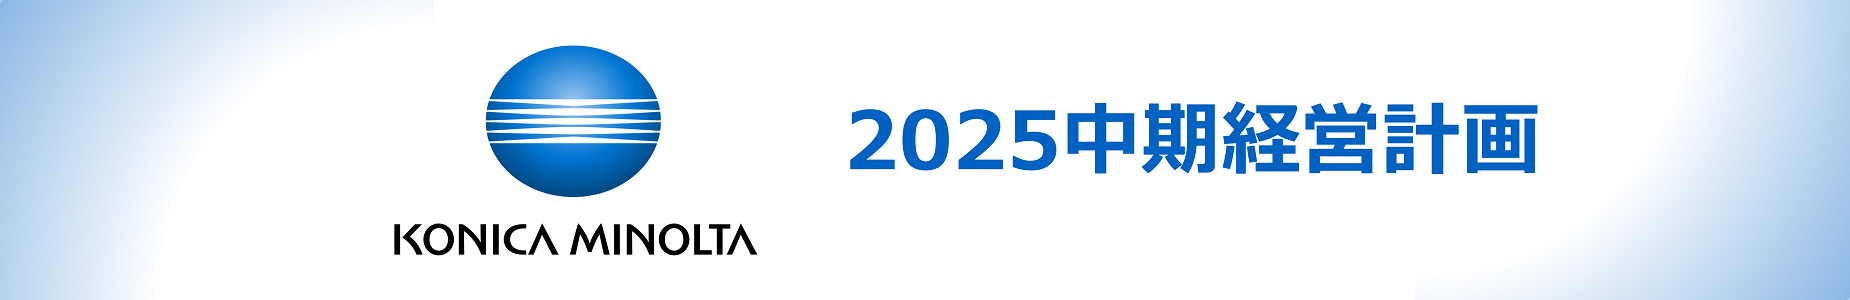 2025中期経営計画